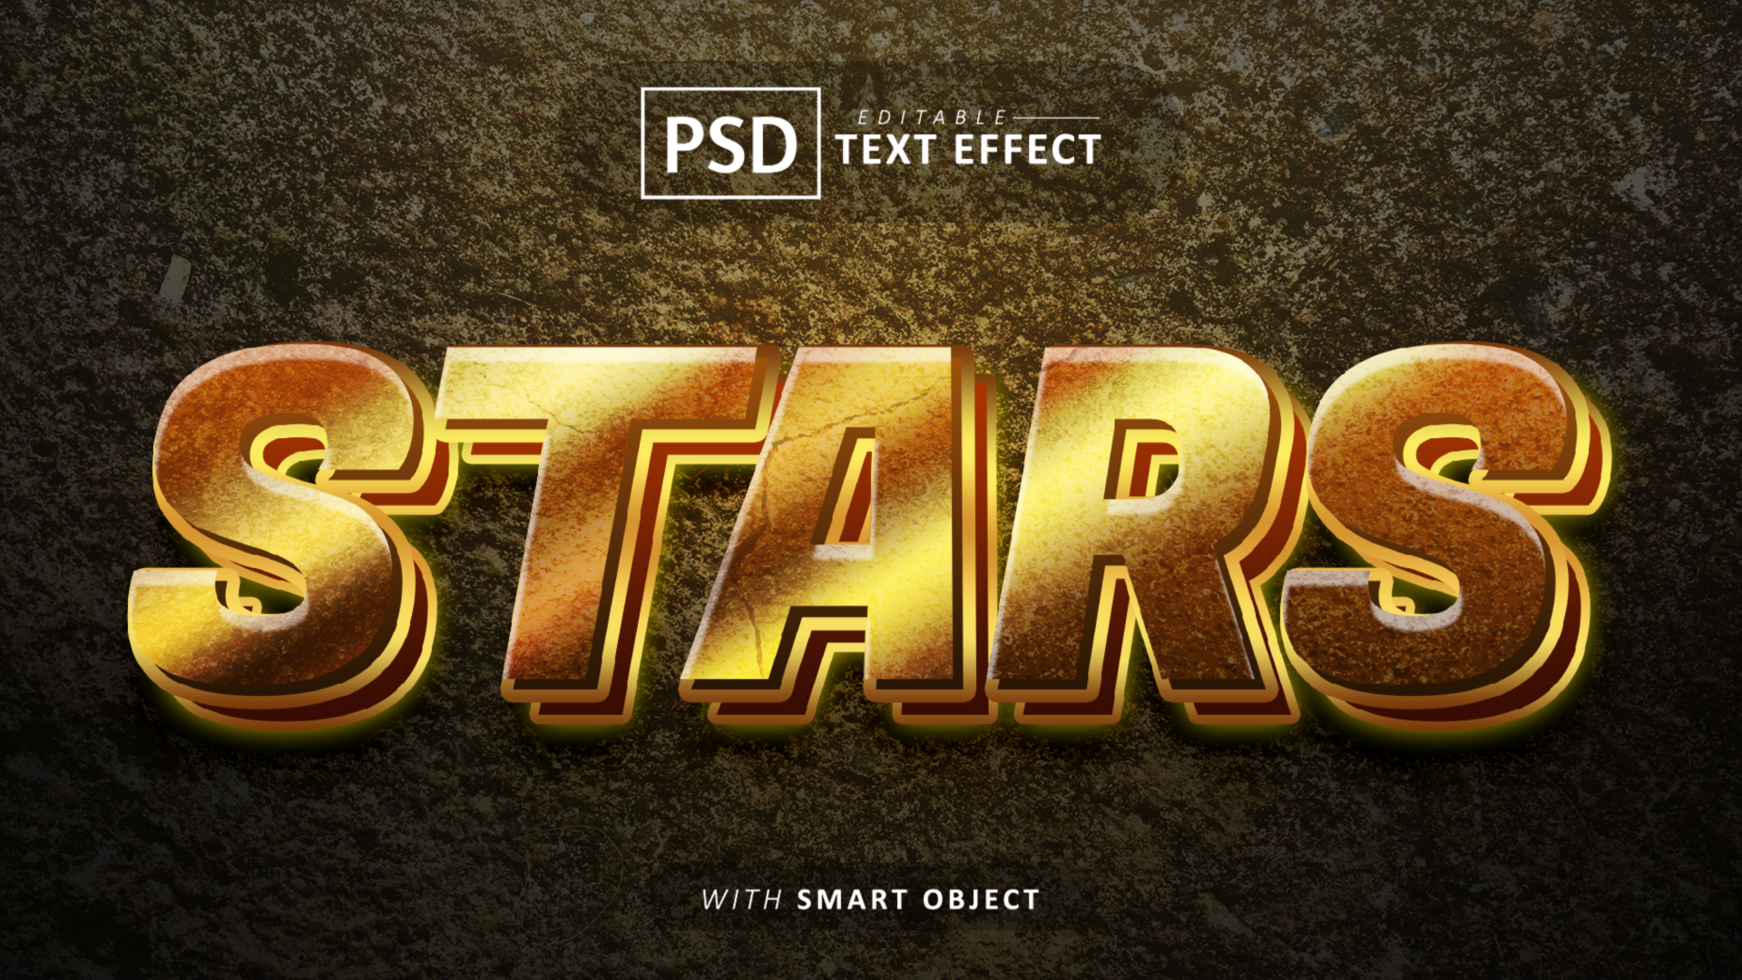 Stars 3d text effect editable psd